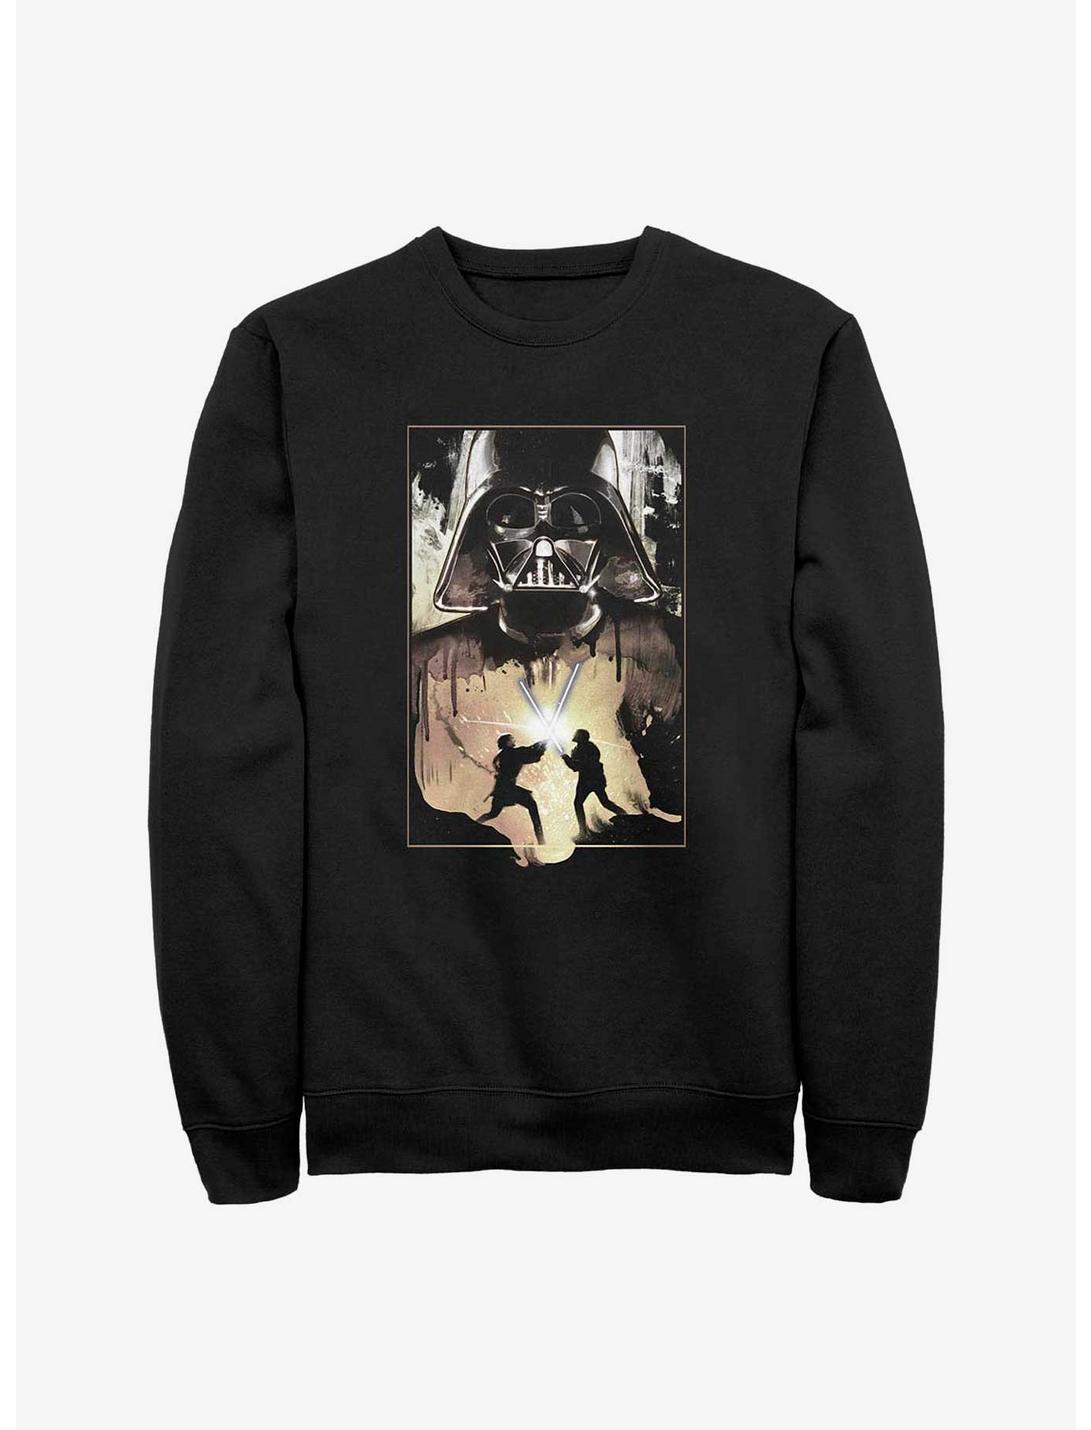 Star Wars Darth Vader Lightsaber Battle Sweatshirt, BLACK, hi-res